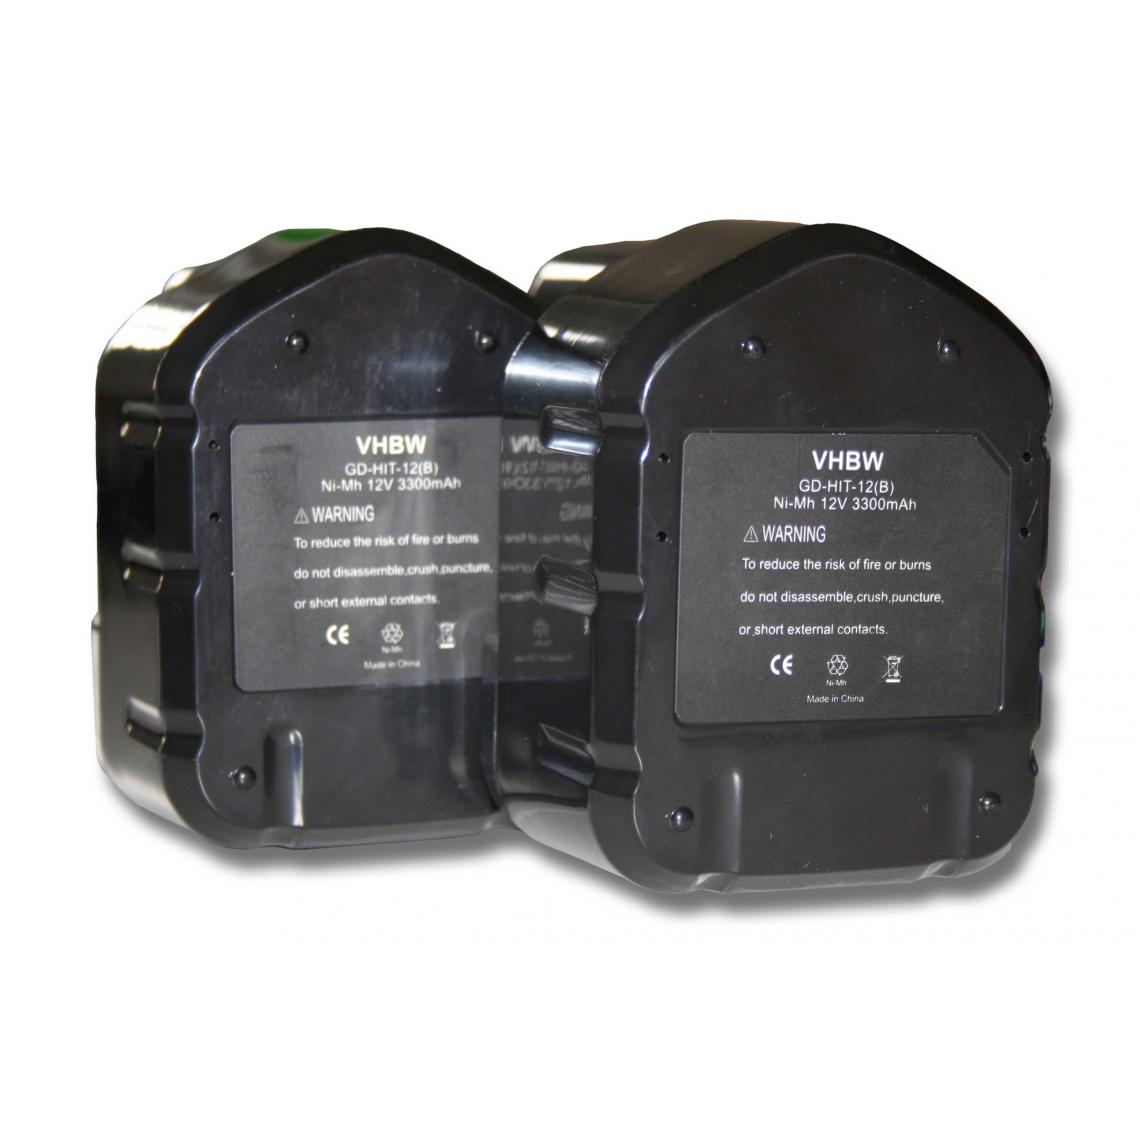 Vhbw - 2x Batterie Ni-MH 3300mAh (12V) vhbw pour outils DS12DVB, DS12DVB2, DS12DVB2KS, DS12DVF comme Hitachi 320386, 320387, 320388, 320606, 320608. - Accessoires vissage, perçage